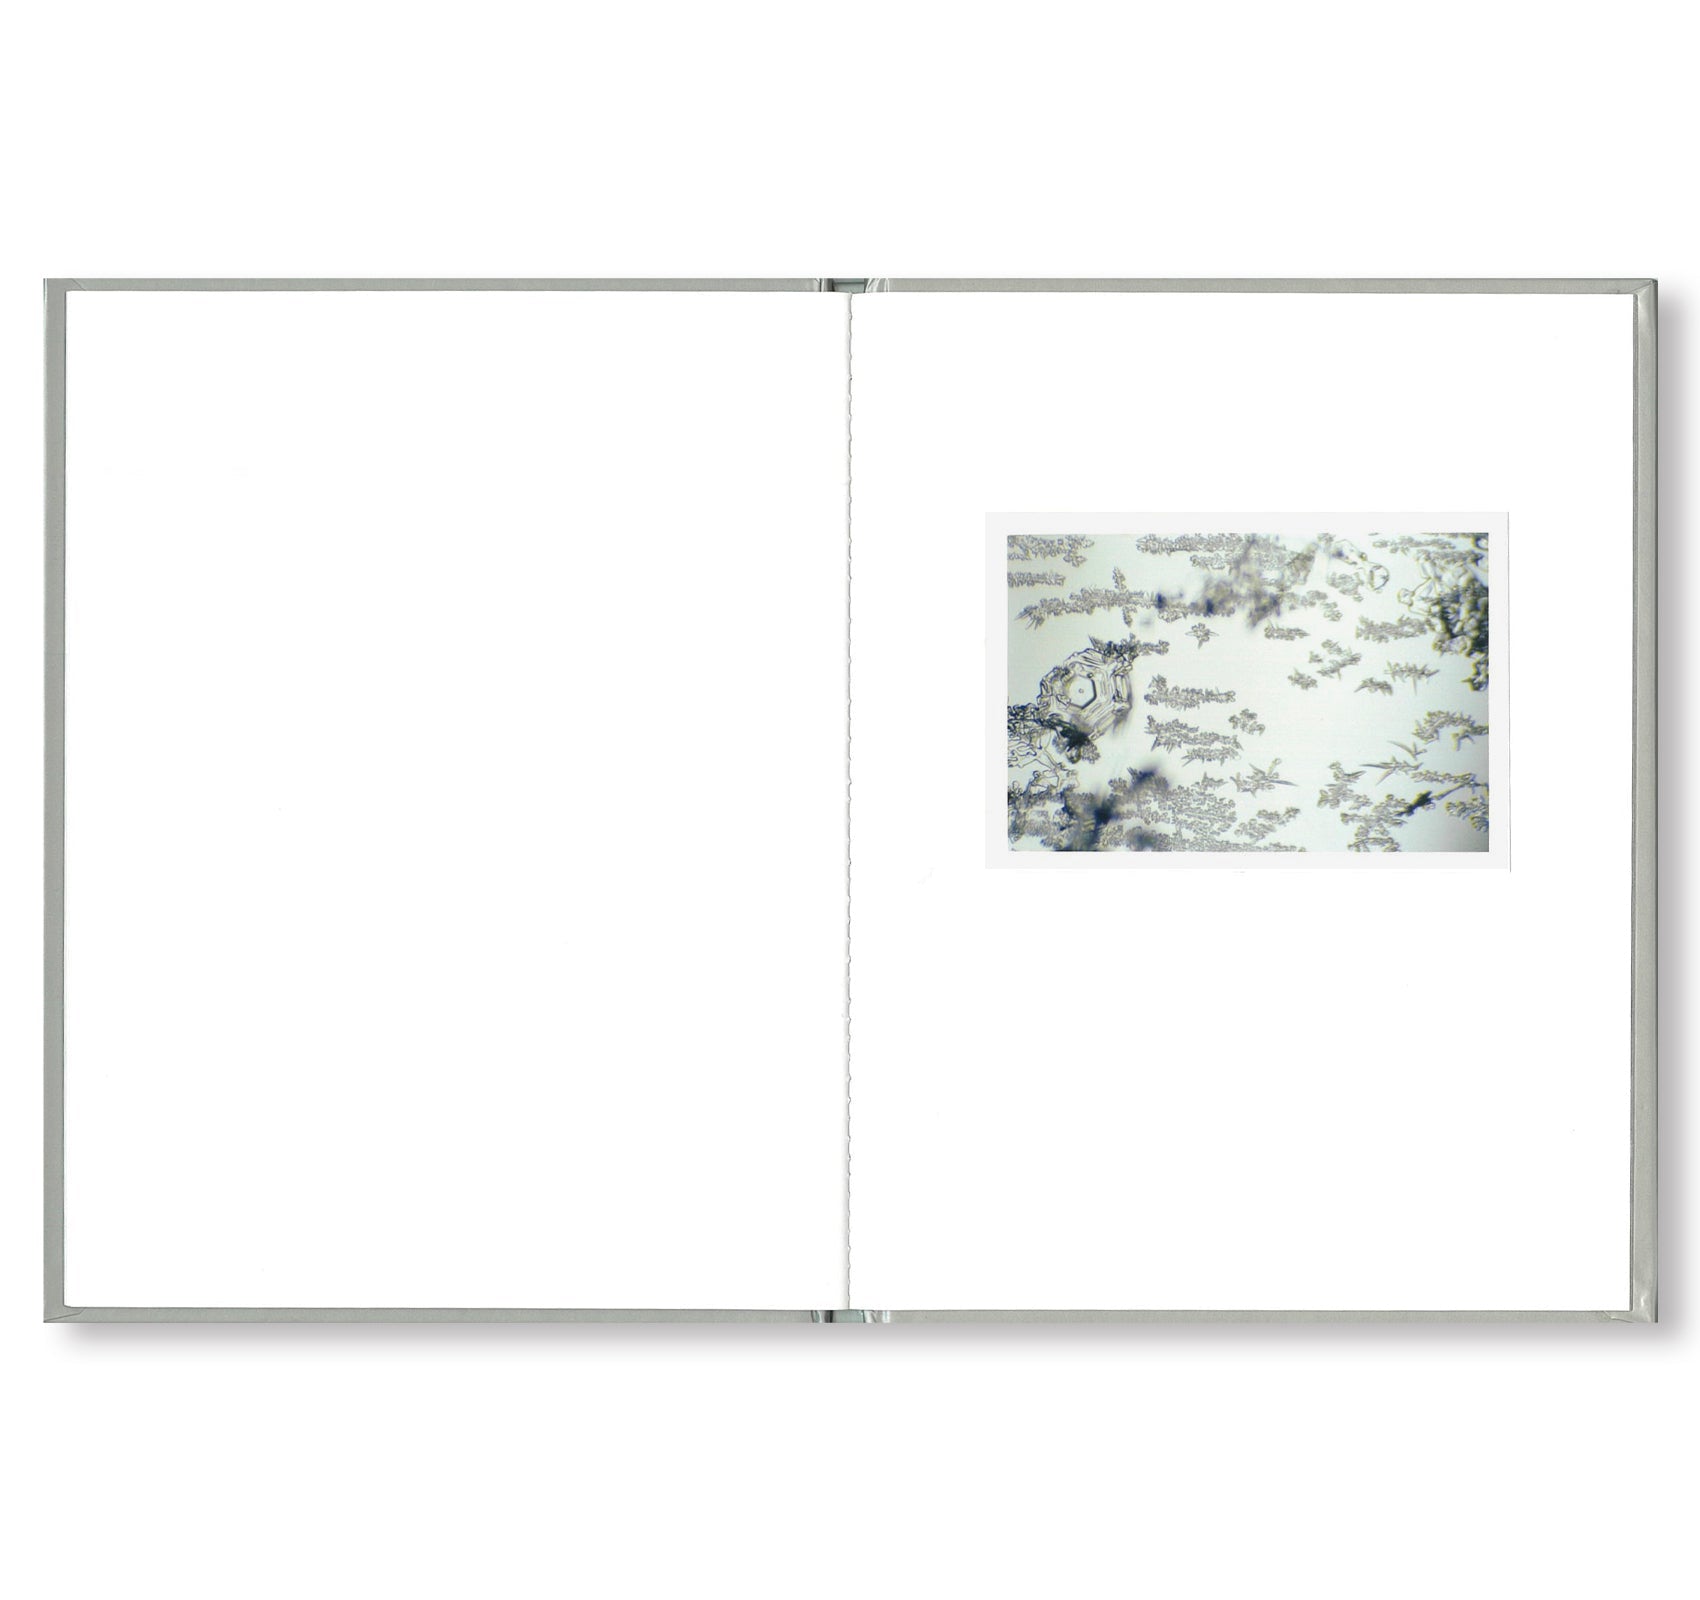 ONE PICTURE BOOK #80: SNOW LETTER by Risaku Suzuki